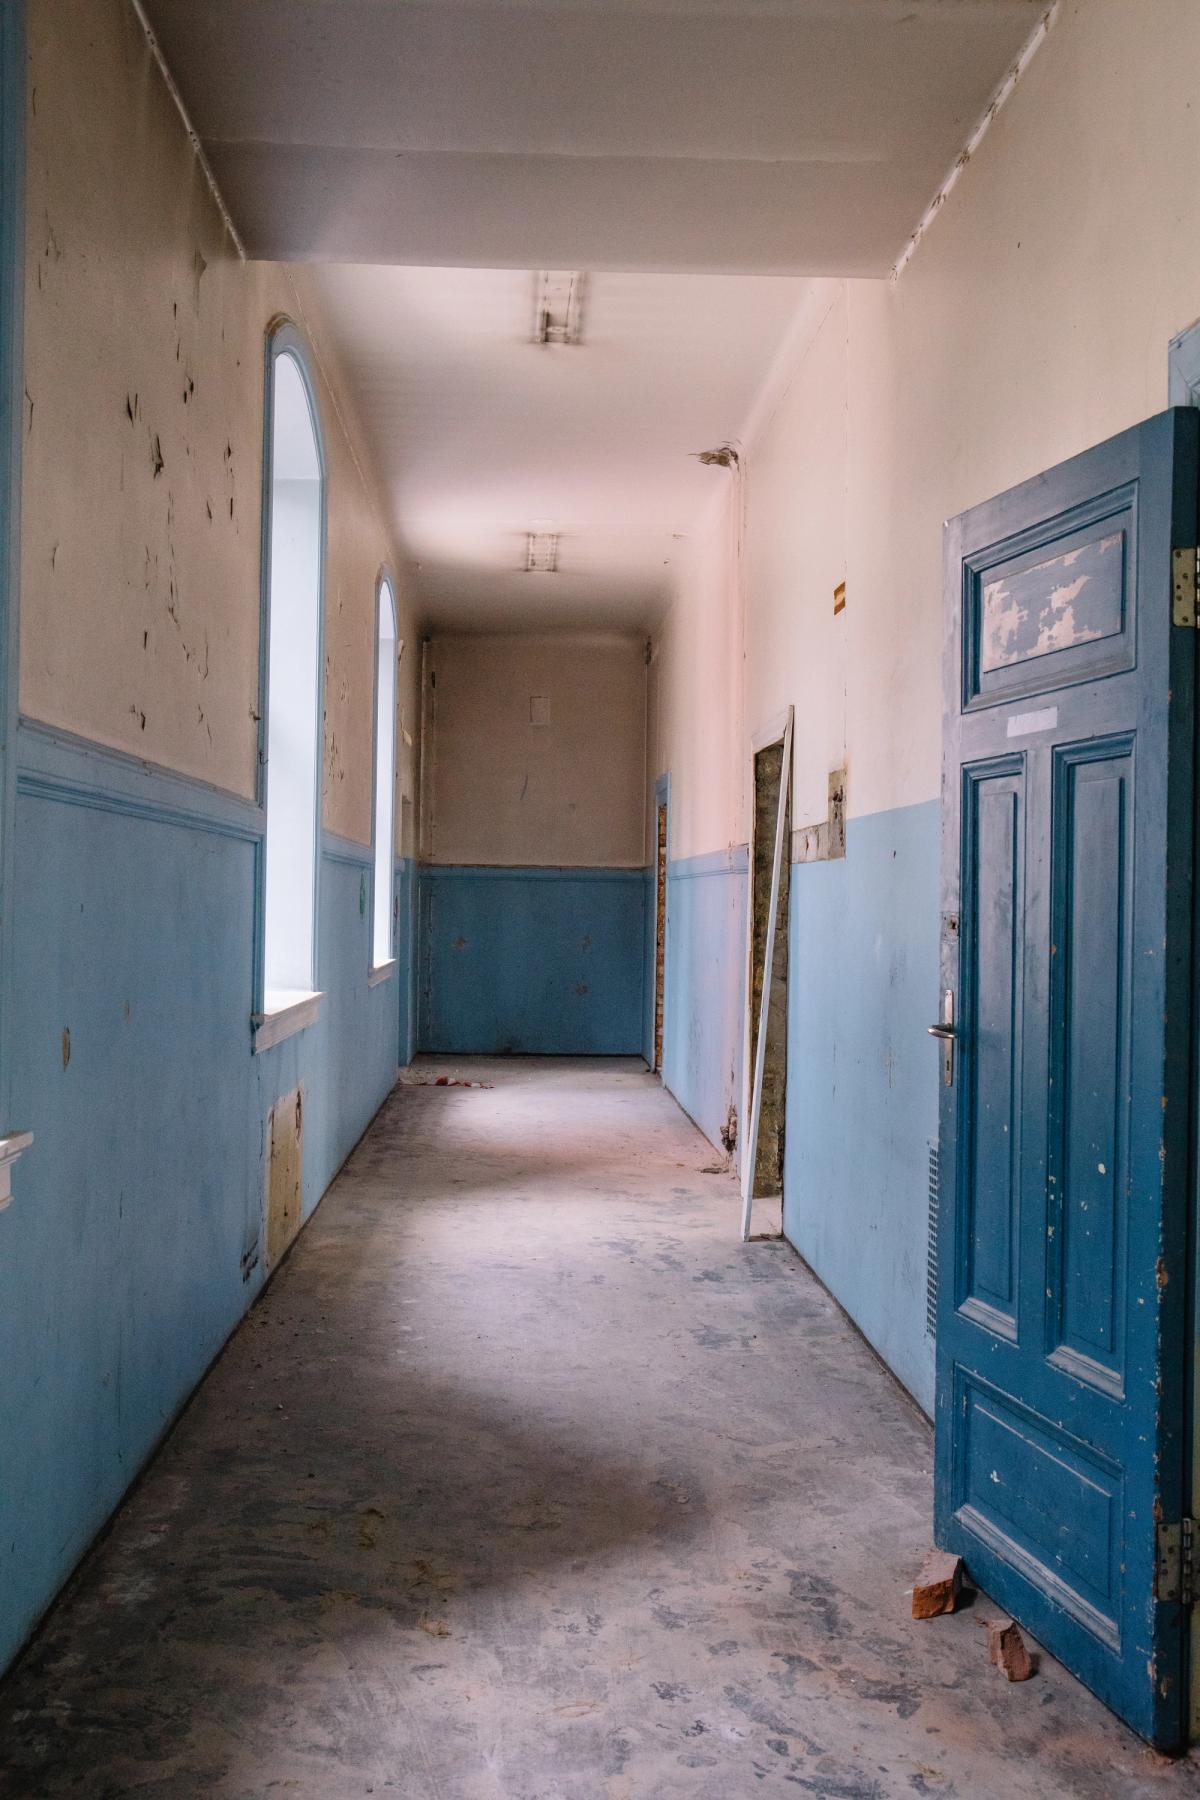 Foto før byggearbeid av korridor, malte vegger, blå brytning og dører.